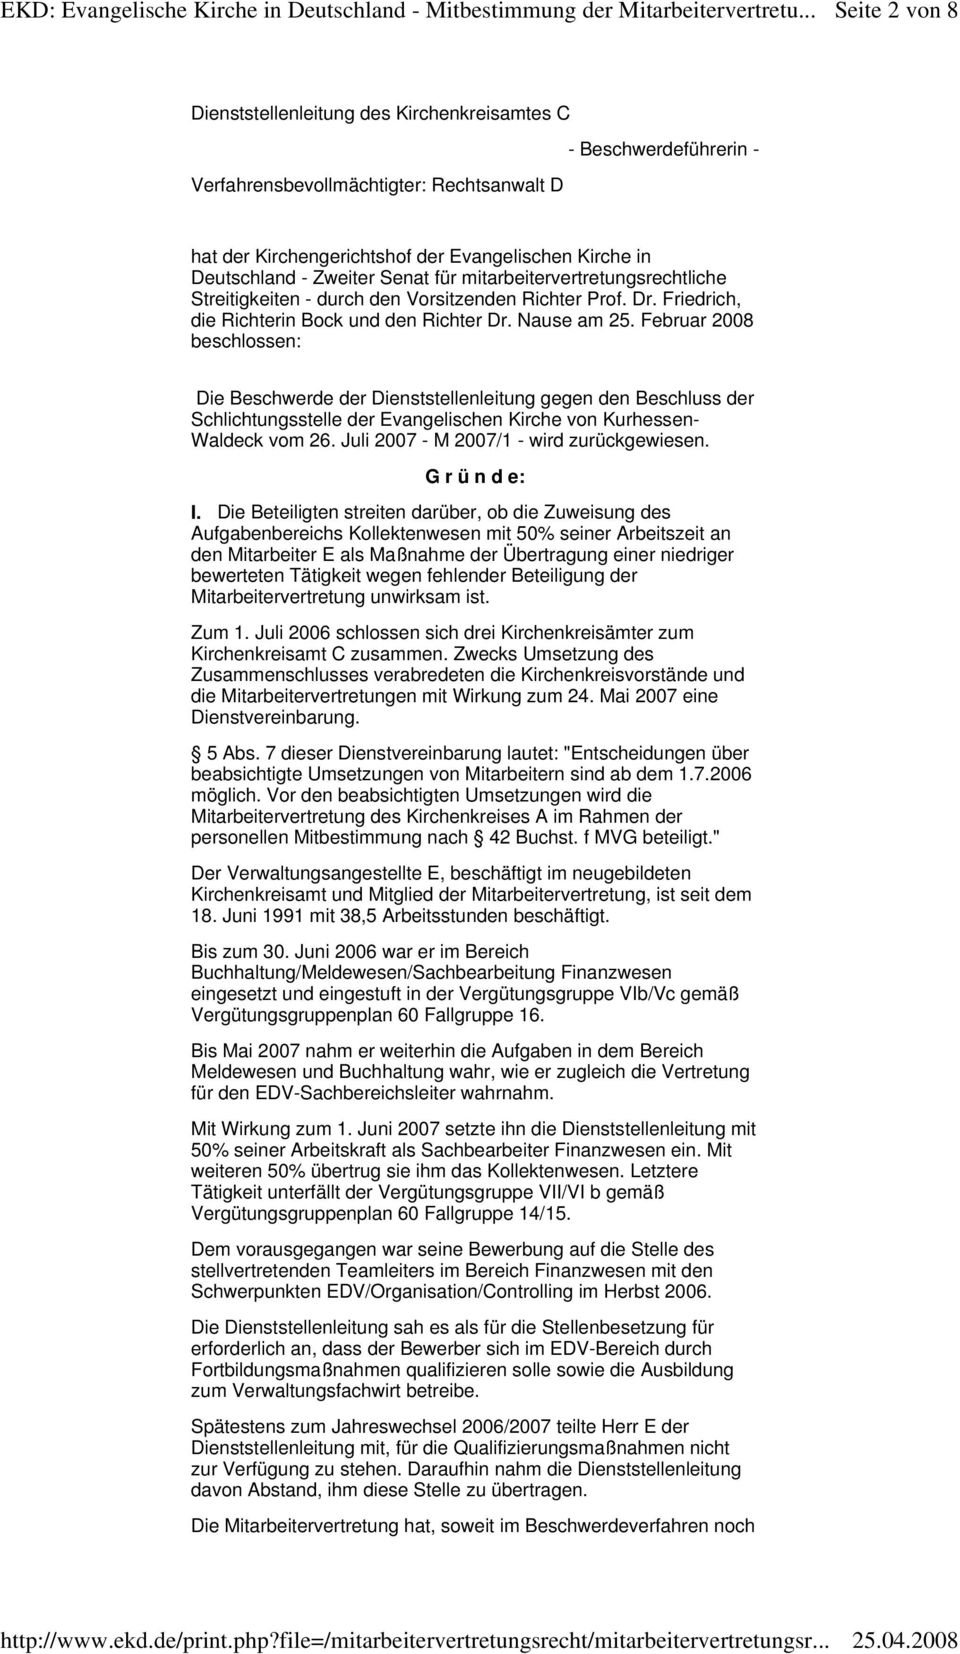 Februar 2008 beschlossen: Die Beschwerde der Dienststellenleitung gegen den Beschluss der Schlichtungsstelle der Evangelischen Kirche von Kurhessen- Waldeck vom 26.